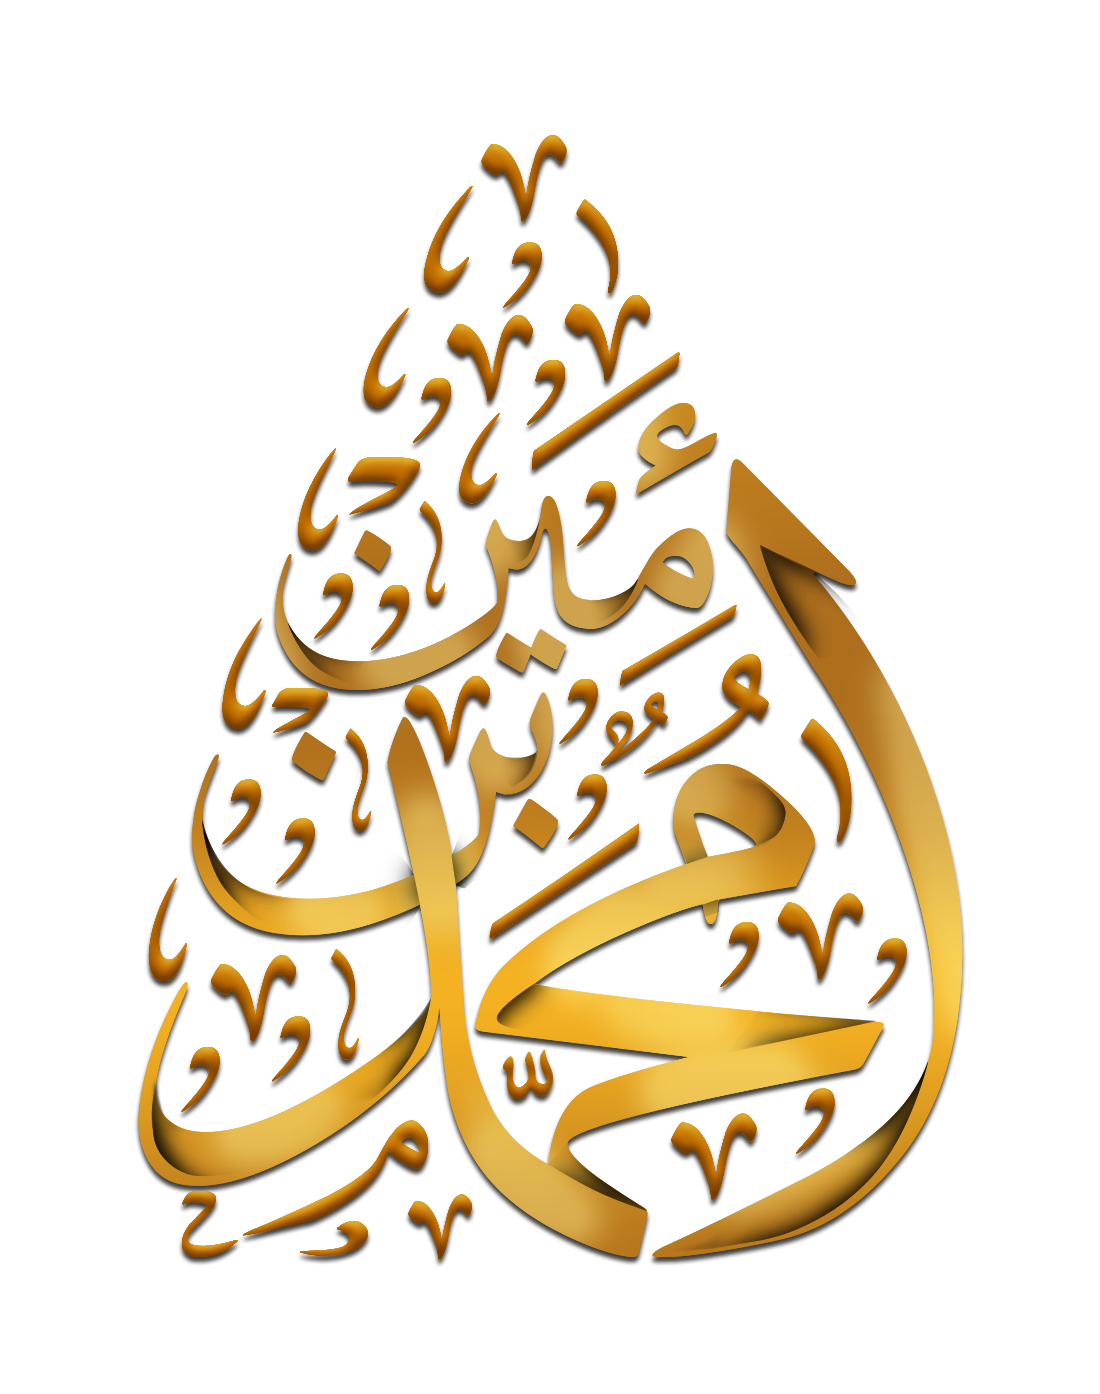 تصميم شعار لوجو مخطوطة محمد بن أمين بخلفية شفافة وتشكيل ذهبي